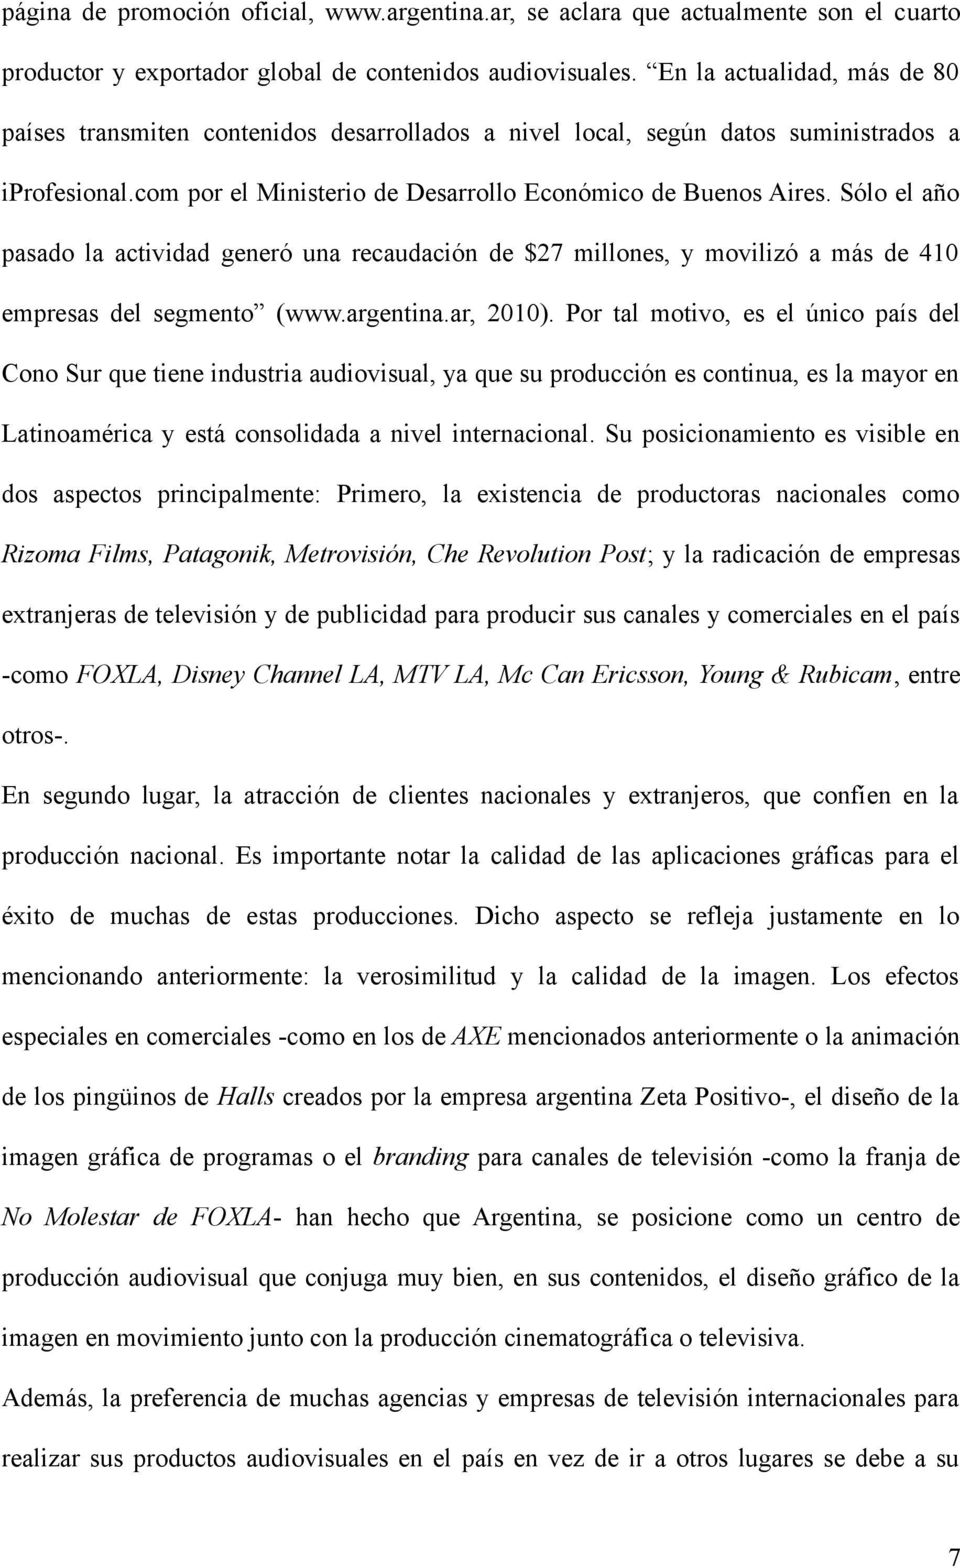 Sólo el año pasado la actividad generó una recaudación de $27 millones, y movilizó a más de 410 empresas del segmento (www.argentina.ar, 2010).